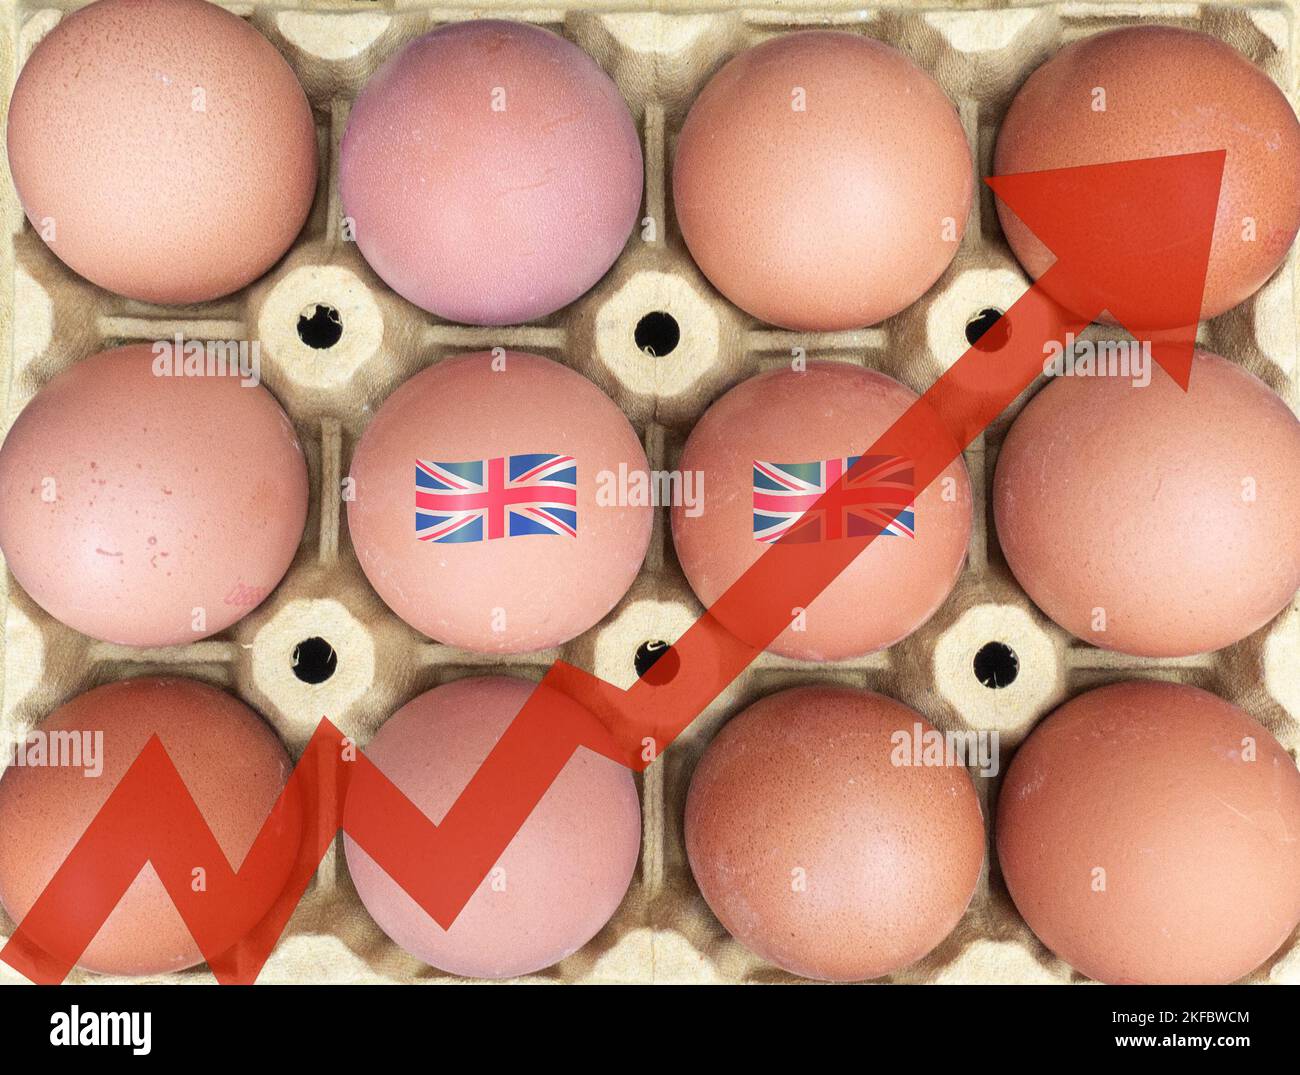 Carenza di uova, aumento dei prezzi delle uova, inflazione, costo della crisi, influenza aviaria, influenza aviaria... concetto Foto Stock